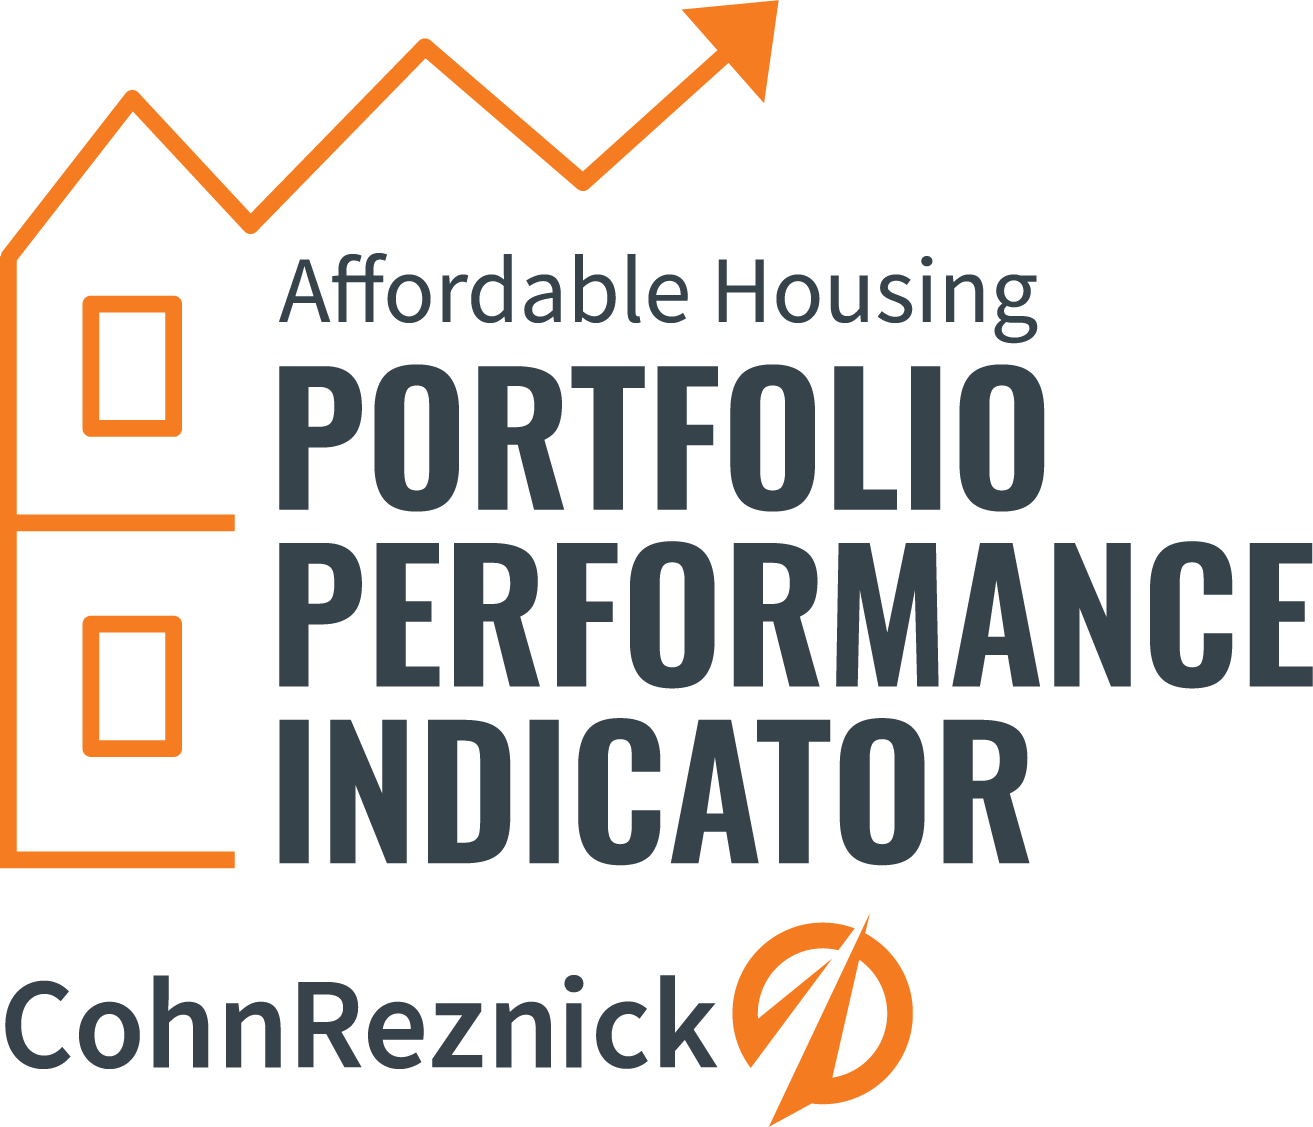 Image of text reading Affordable Housing portfolio performance indicator CohnReznick